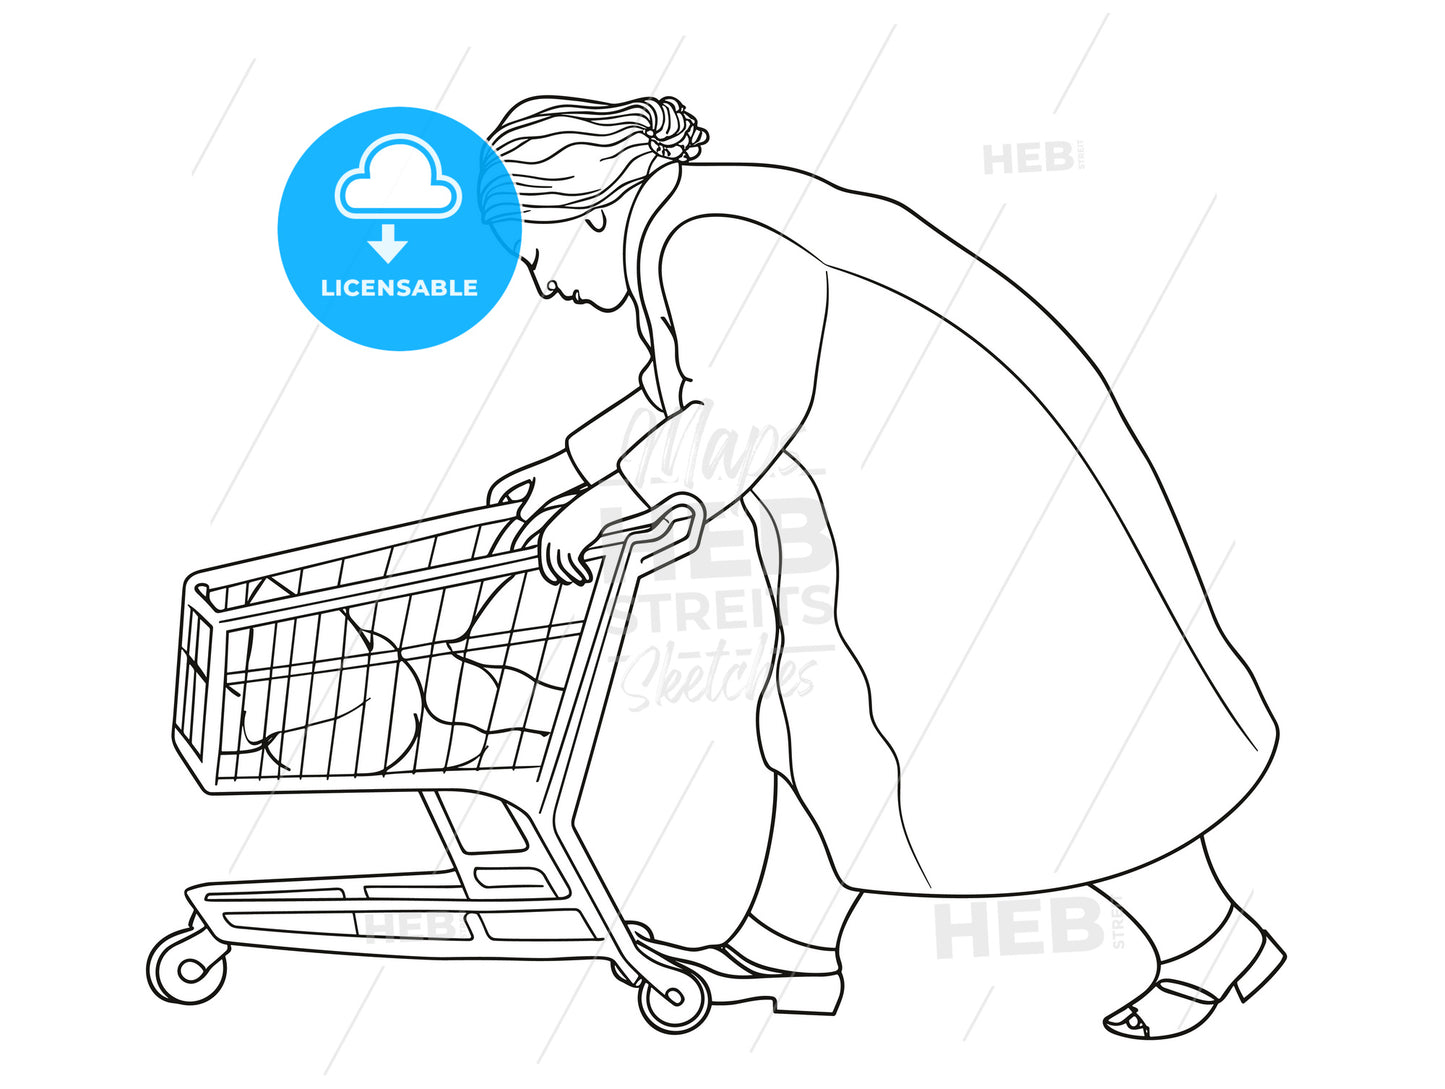 Shoppoing - a woman pushing a shopping cart